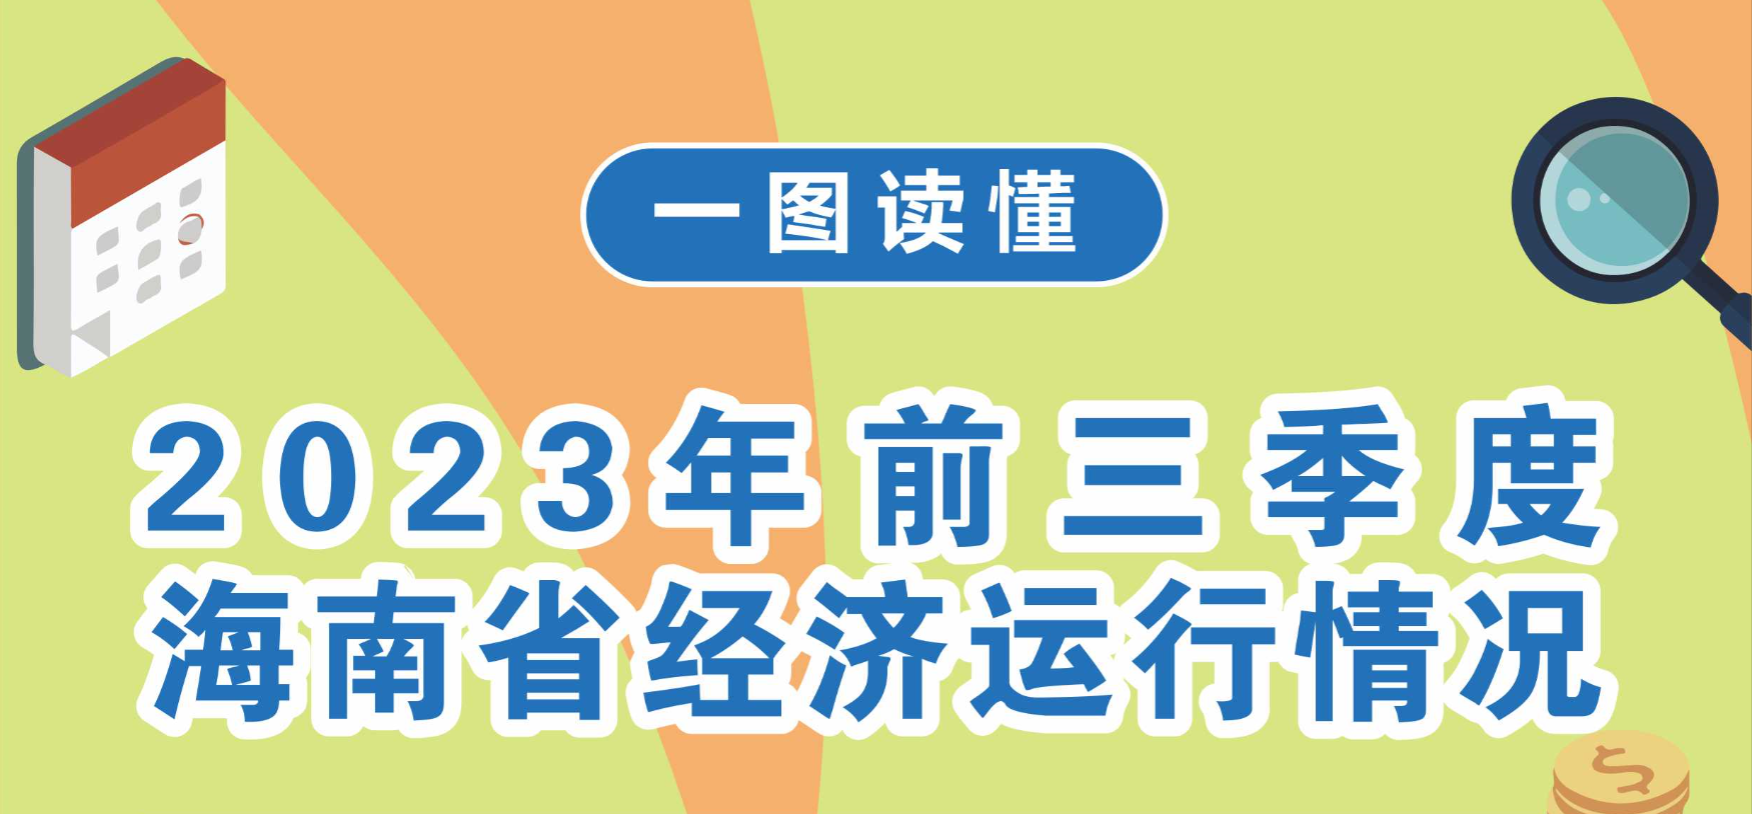 图解2023年前三季度海南省经济运行情况